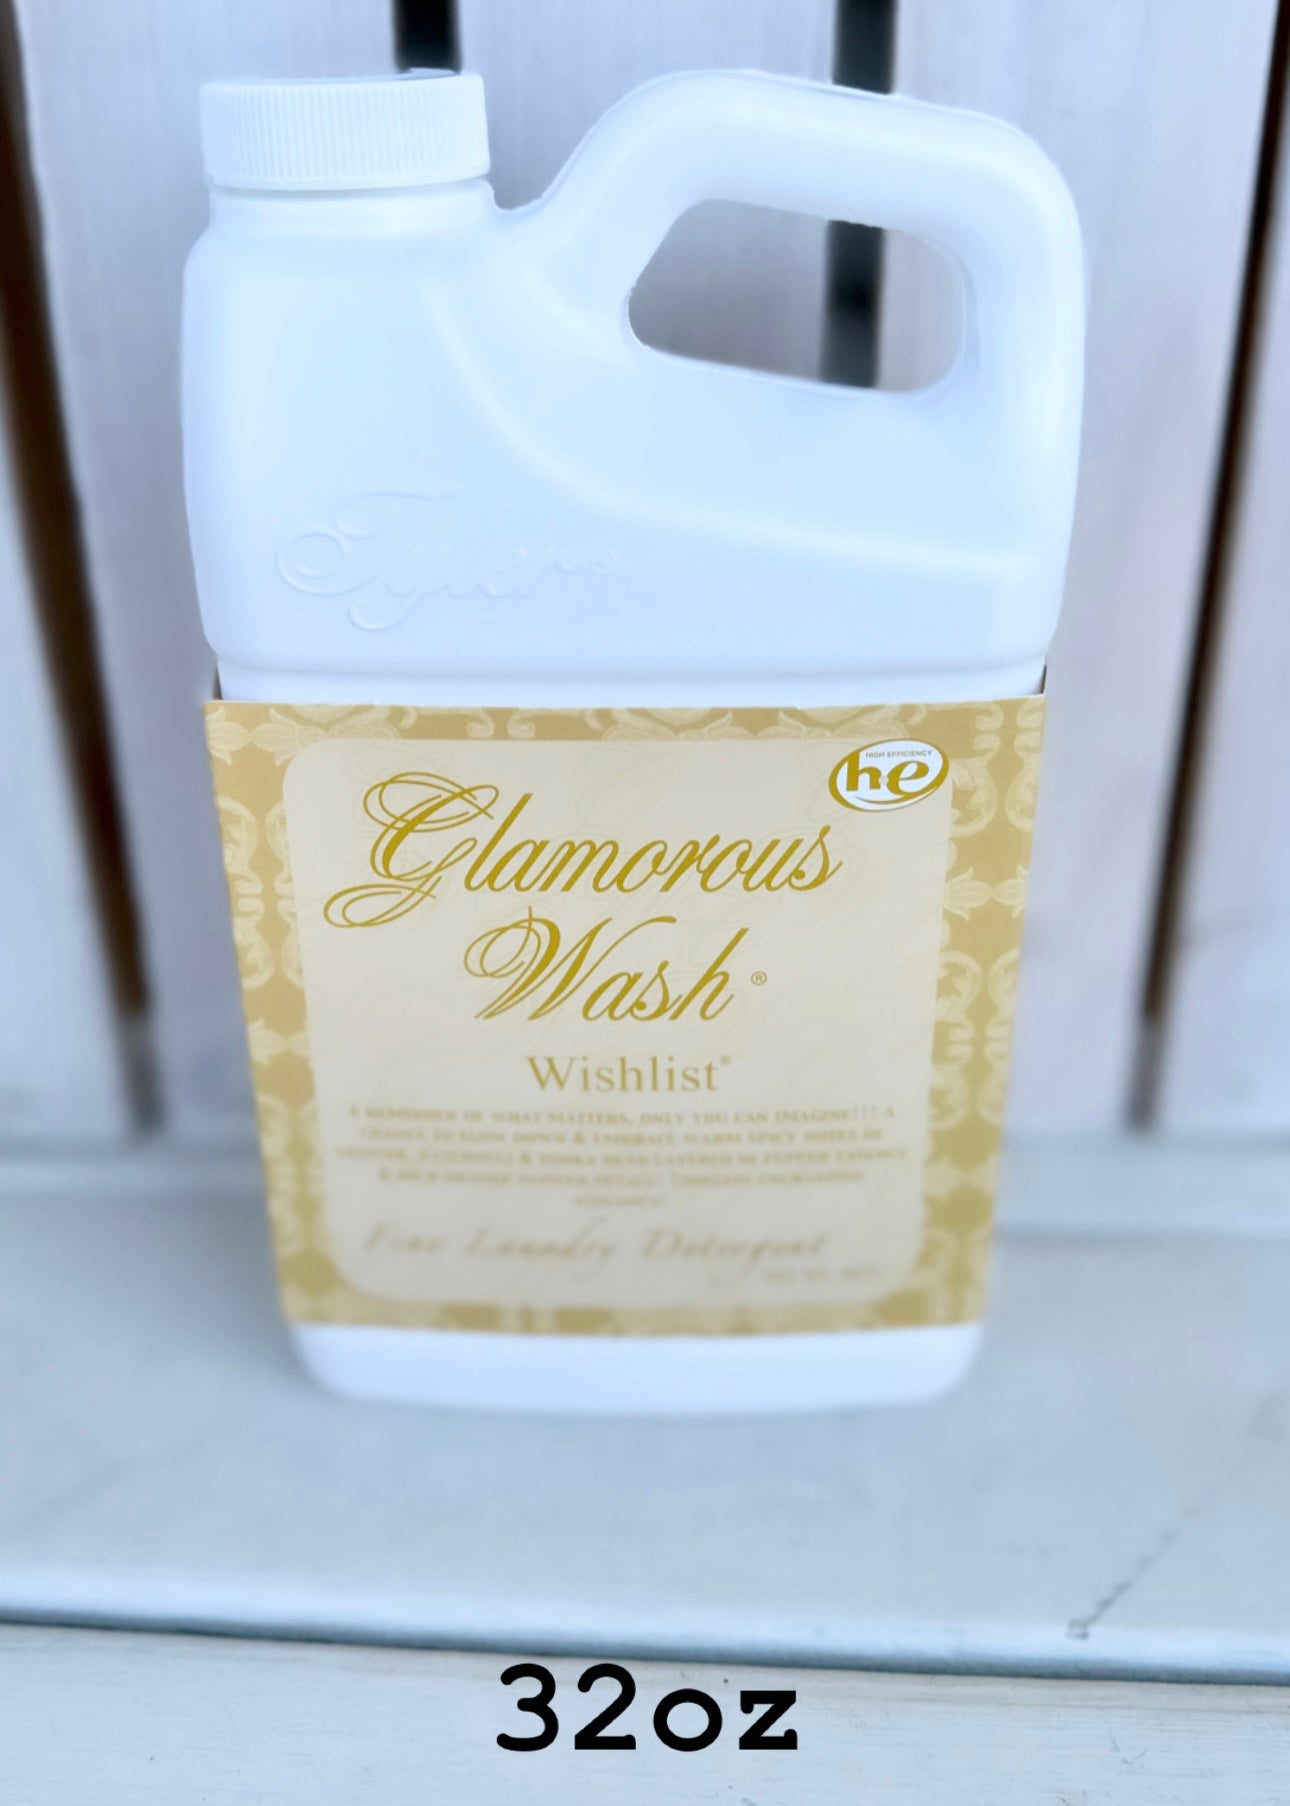 Glamorous Wash Laundry Detergent Tyler Candle Company - 32oz - Jimberly's Boutique